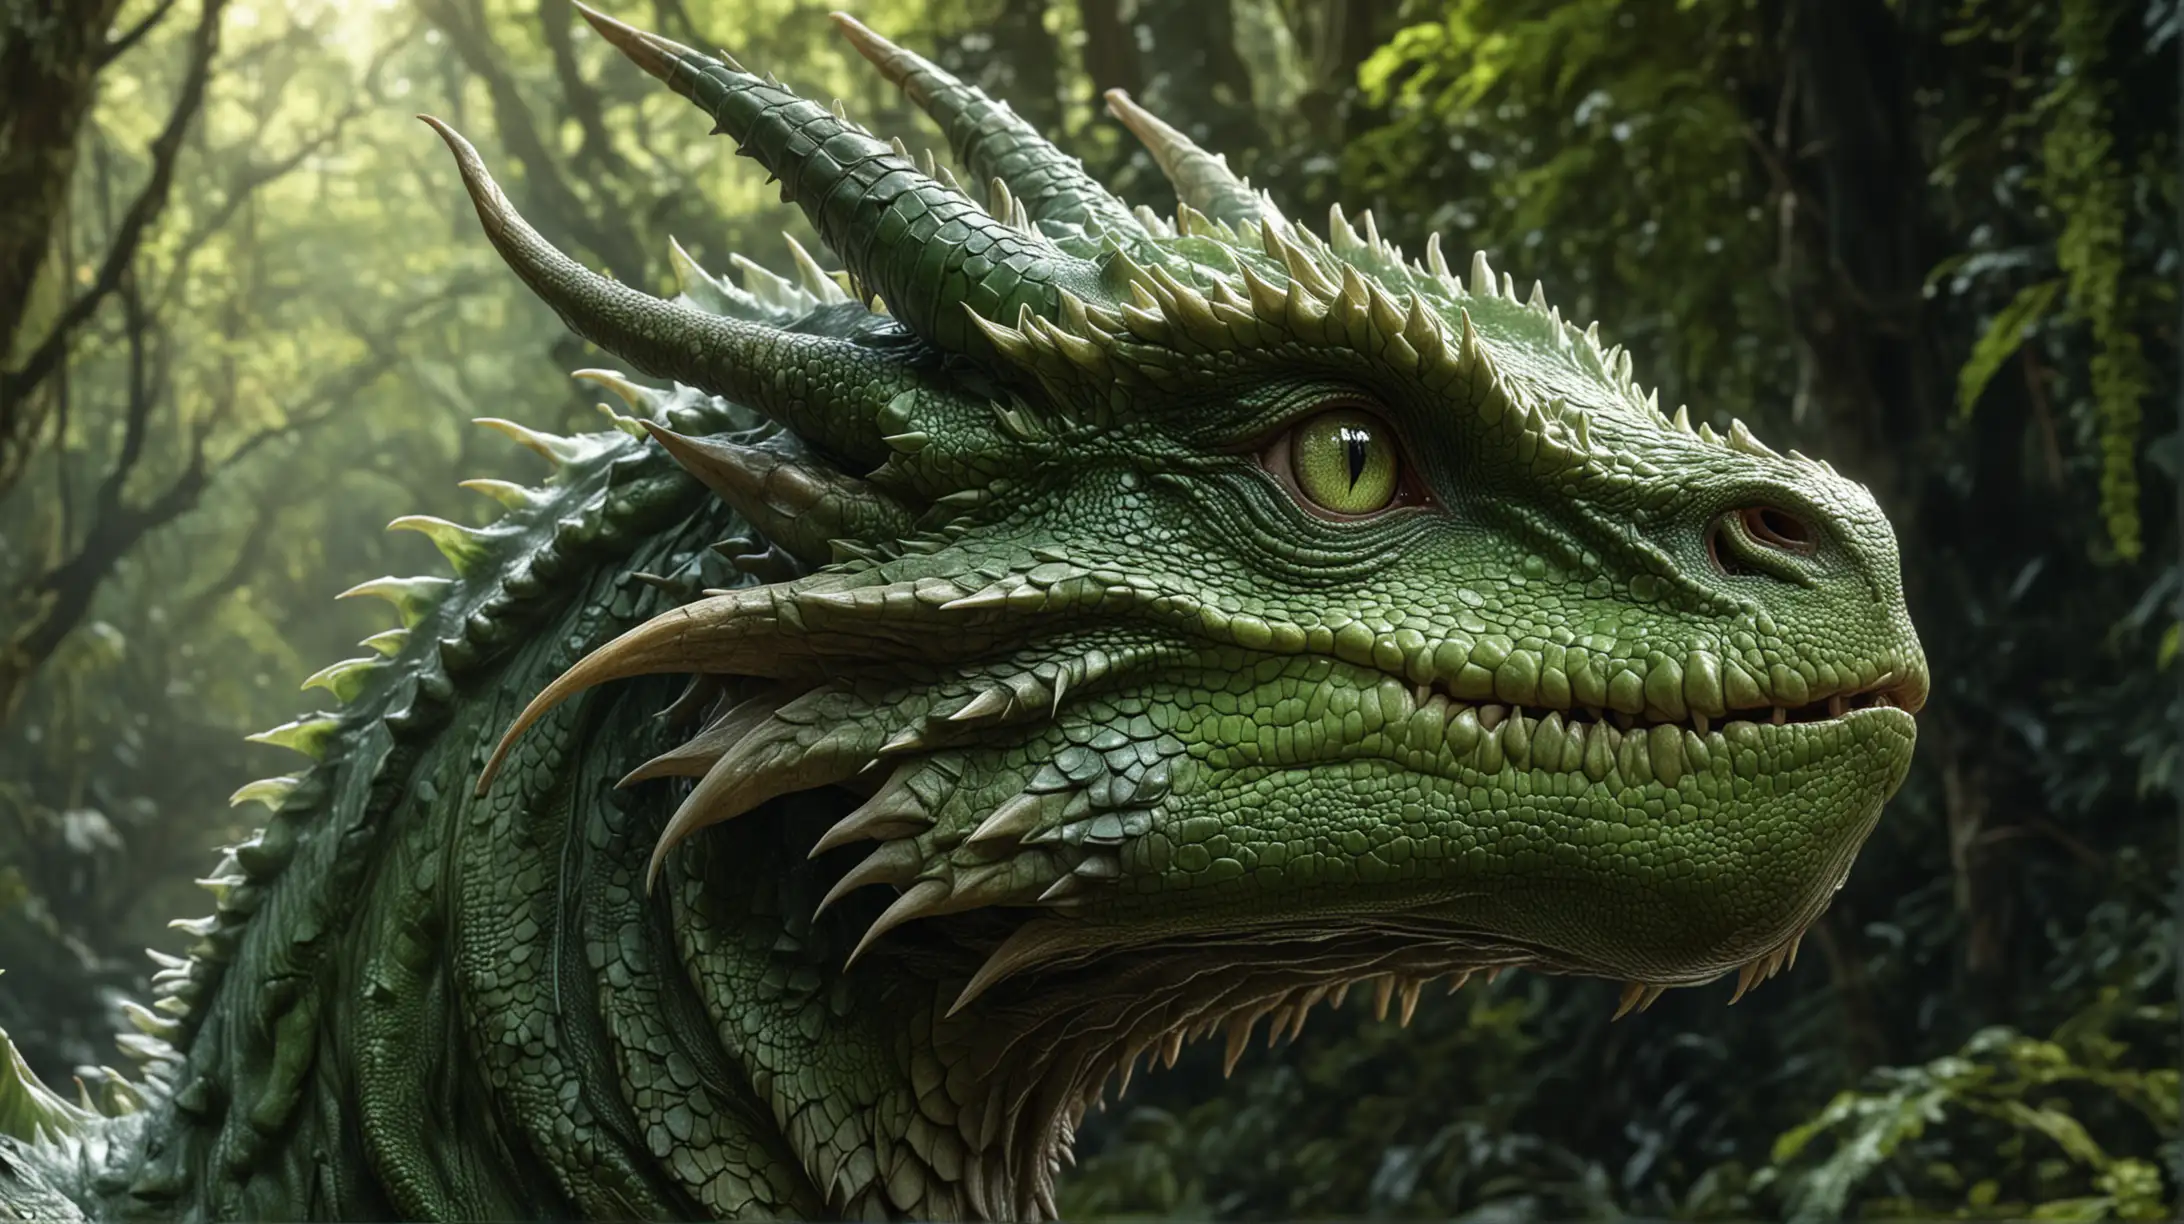 Majestic Green Dragon in Amazonian Forest Hyperrealistic 8K Ultra HD Artwork